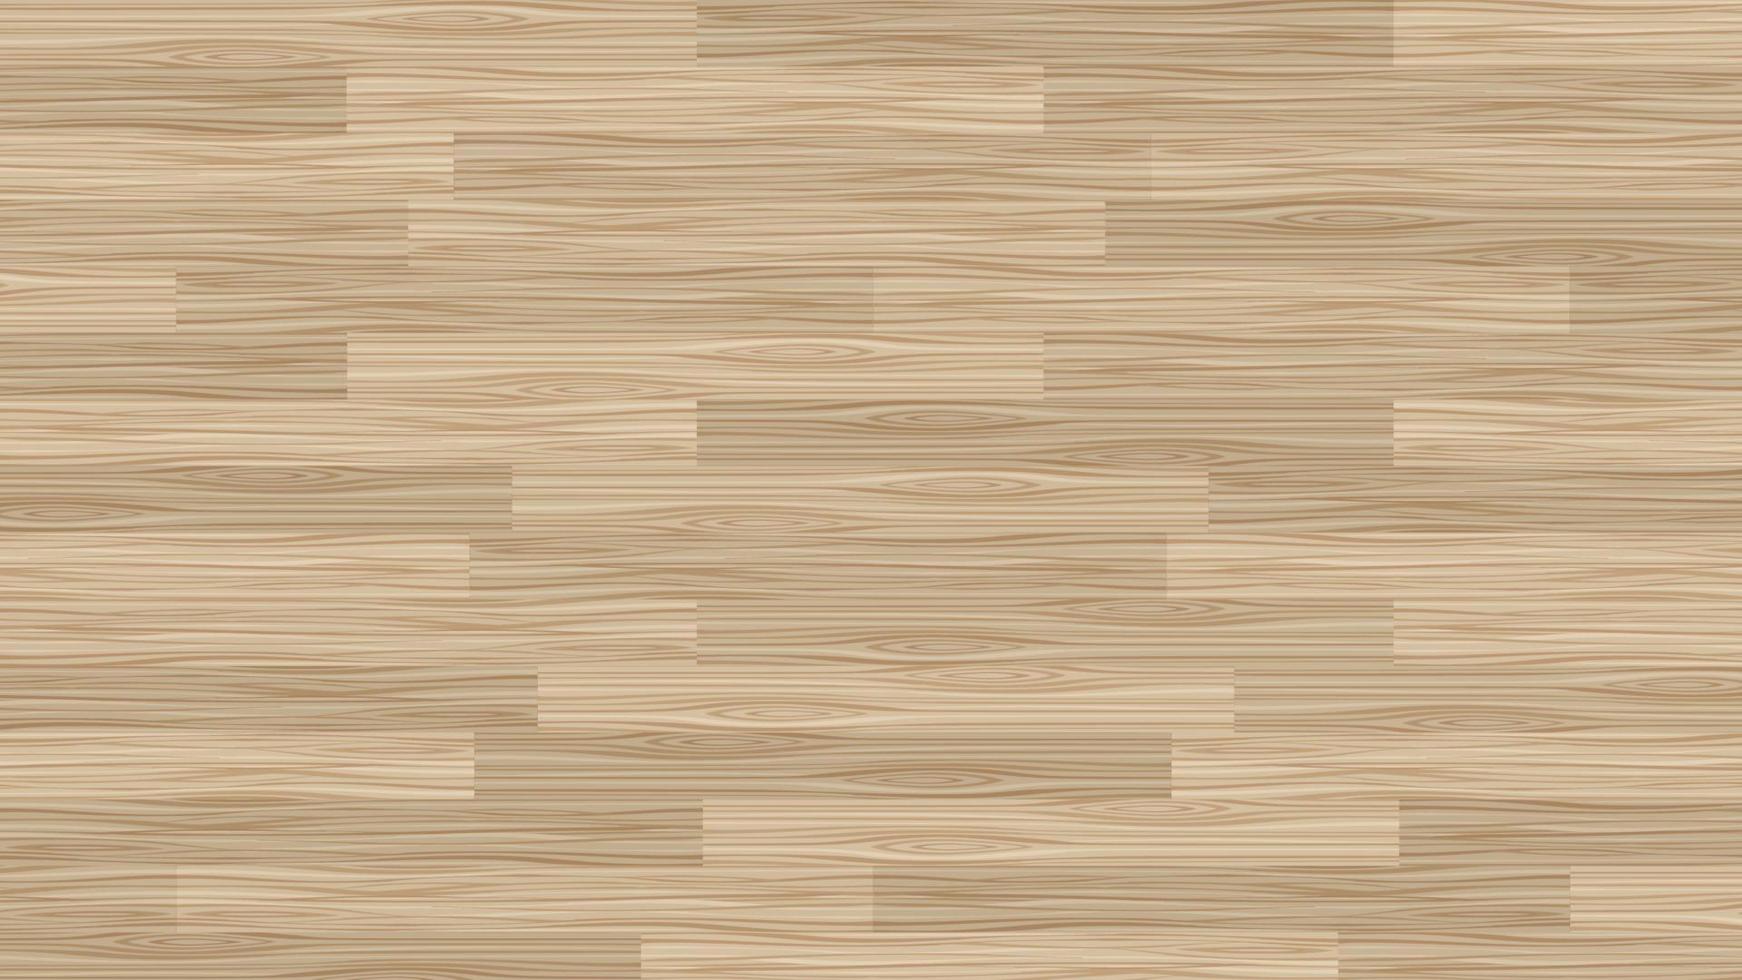 textura de madeira pranchas padrões horizontais cor marrom claro fundo de design vetor